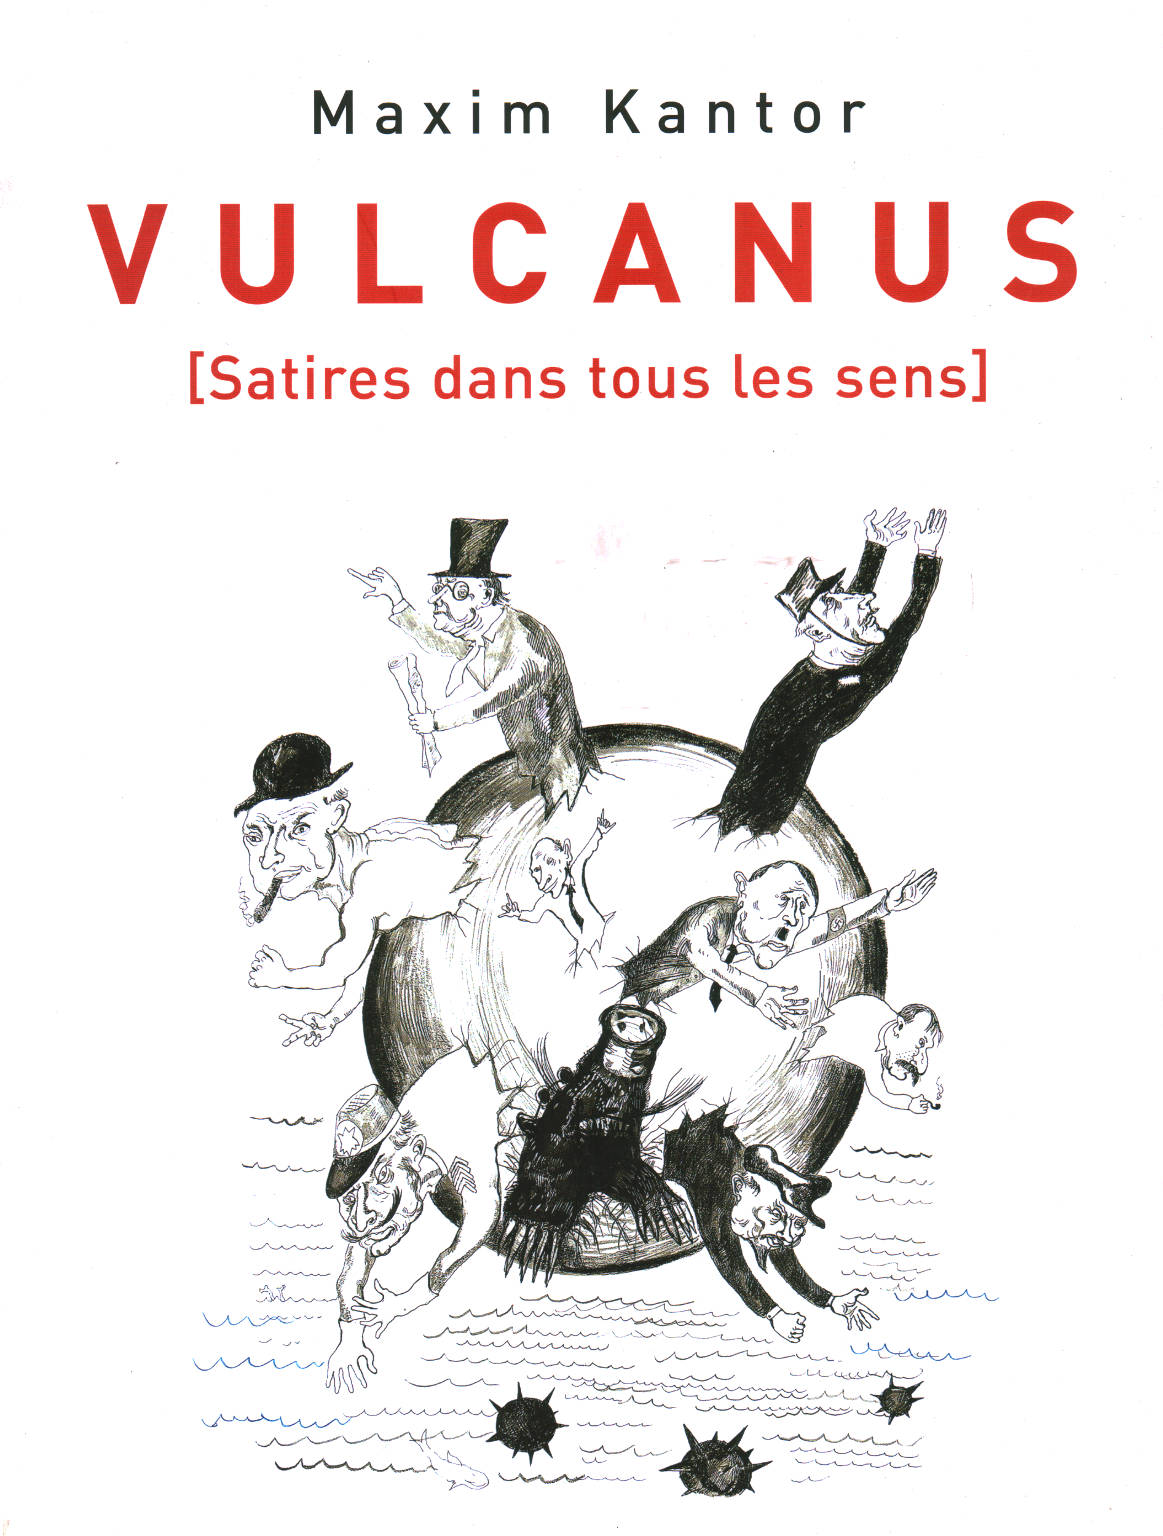 Vulcanus [Satires dans tous les sens], Maxim Kantor